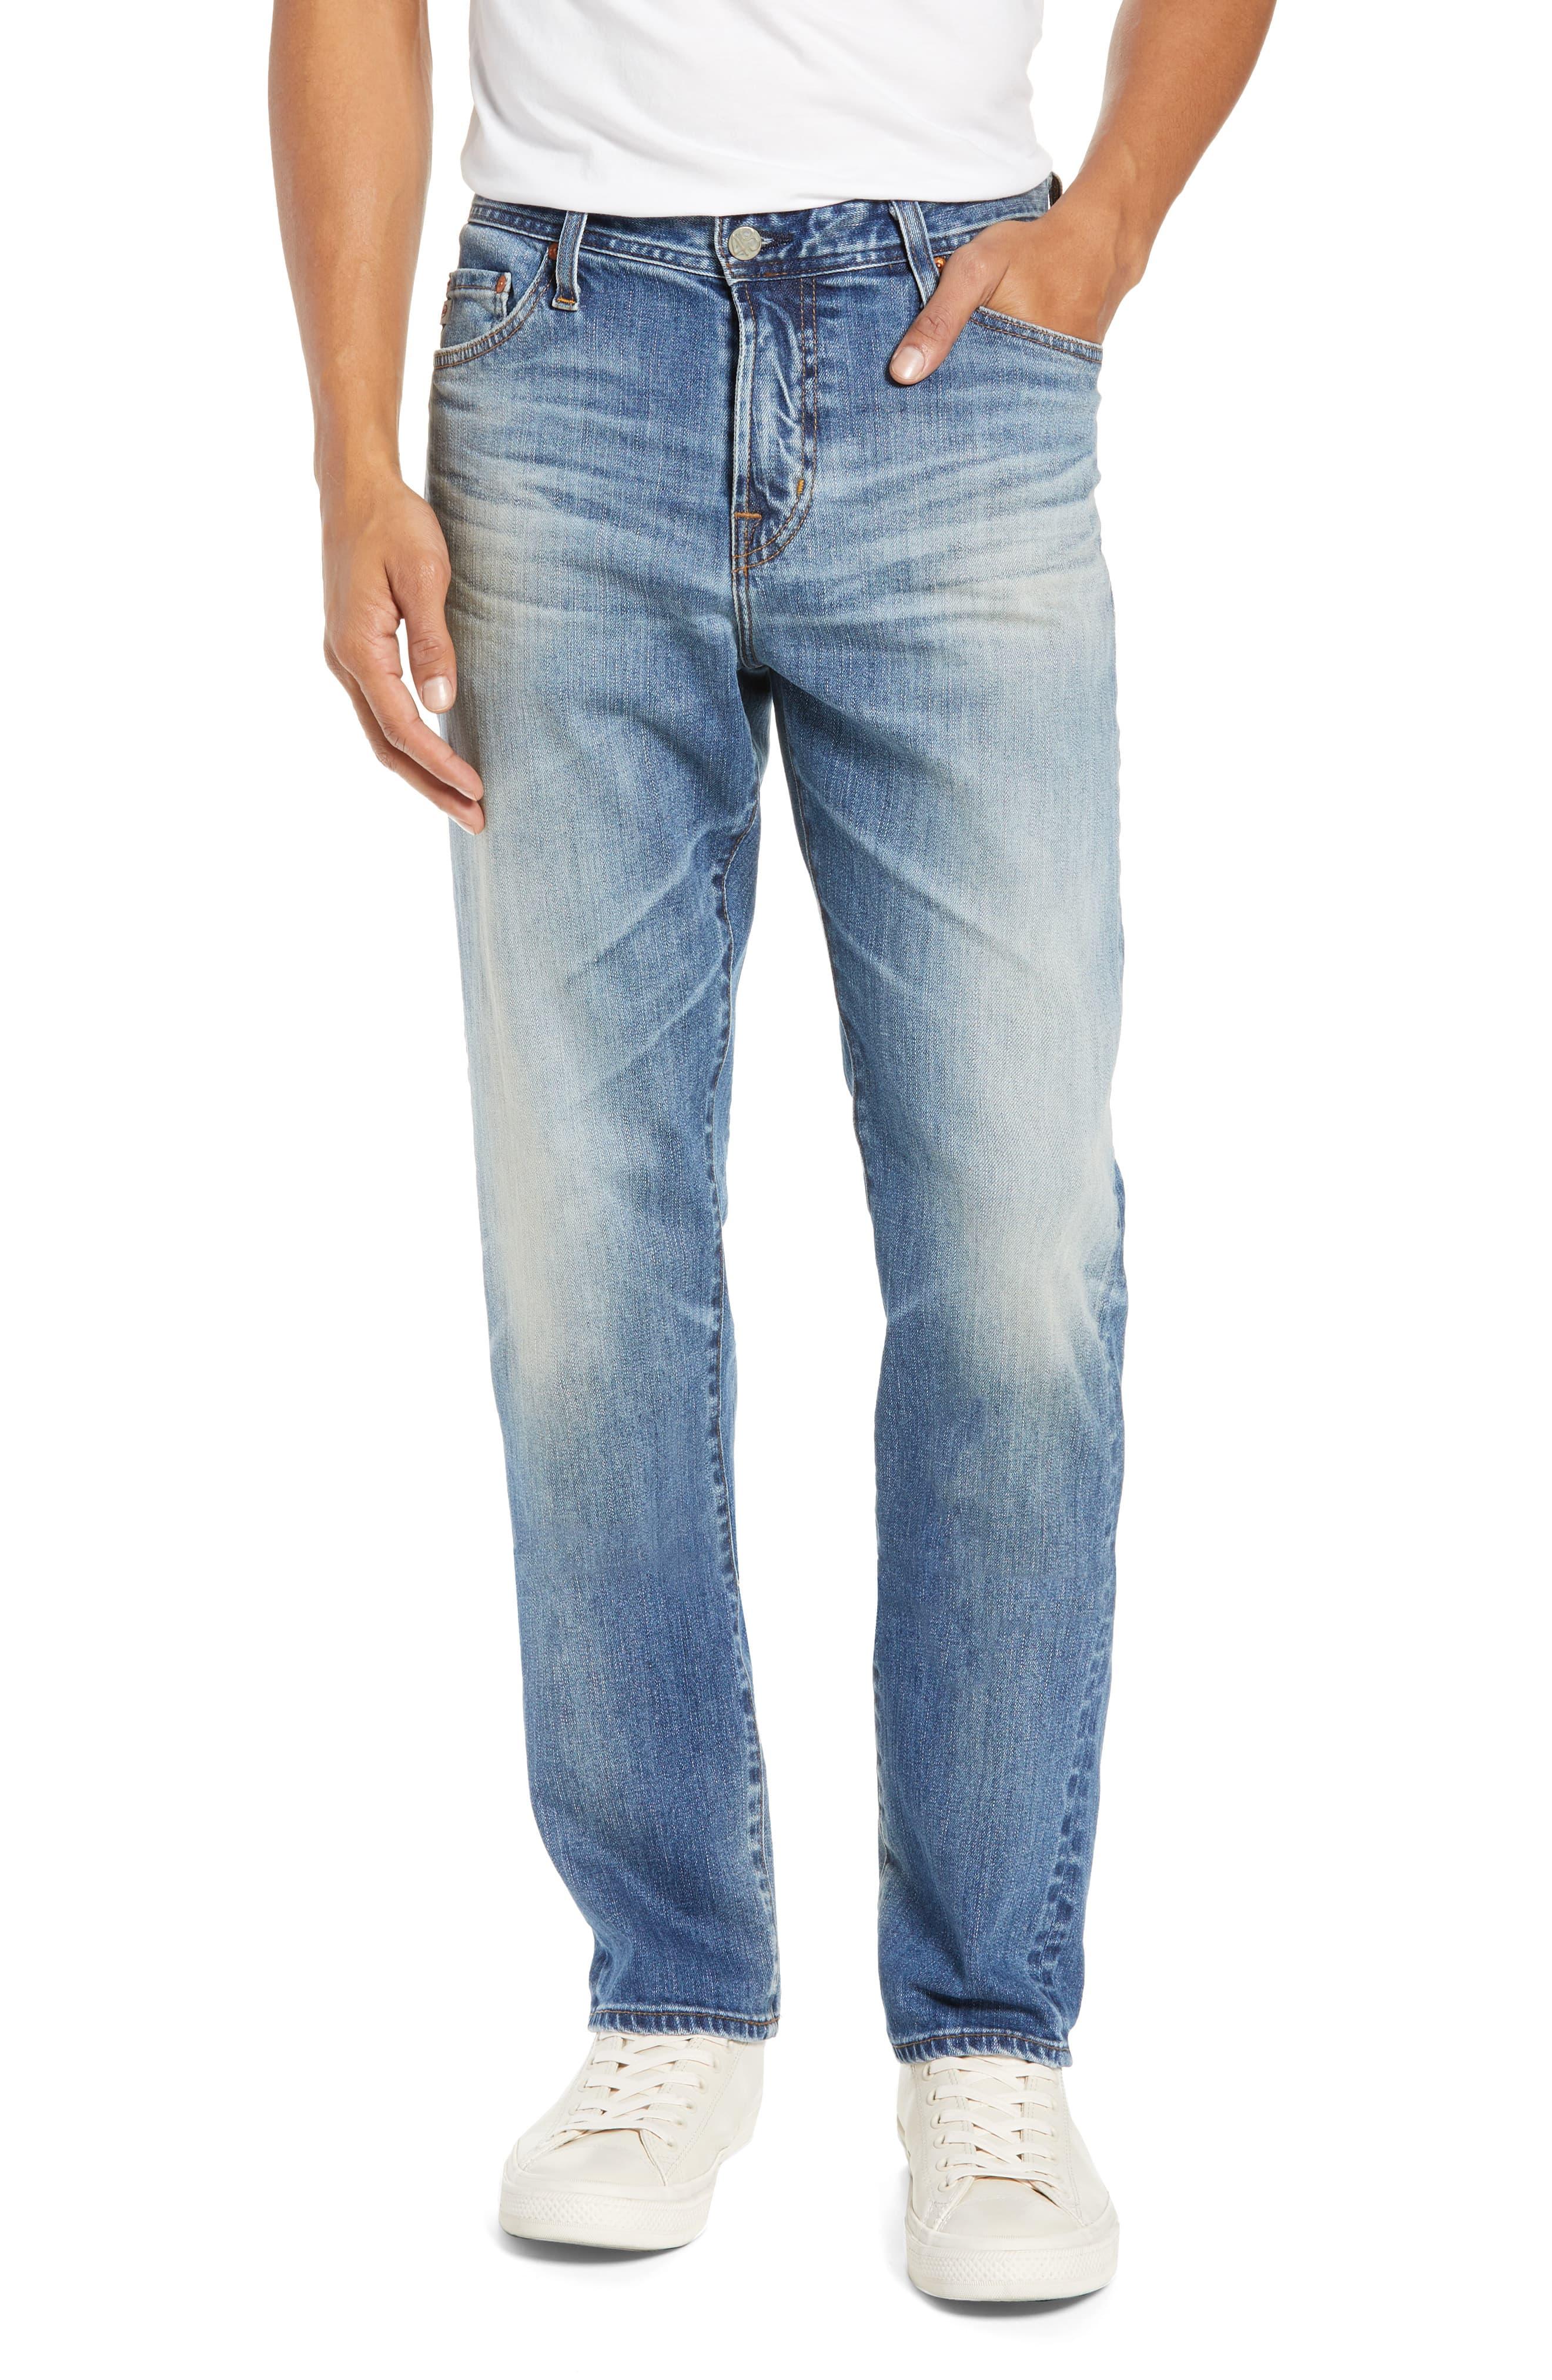 AG Jeans Everett Slim Straight Leg Jeans in Blue for Men - Lyst